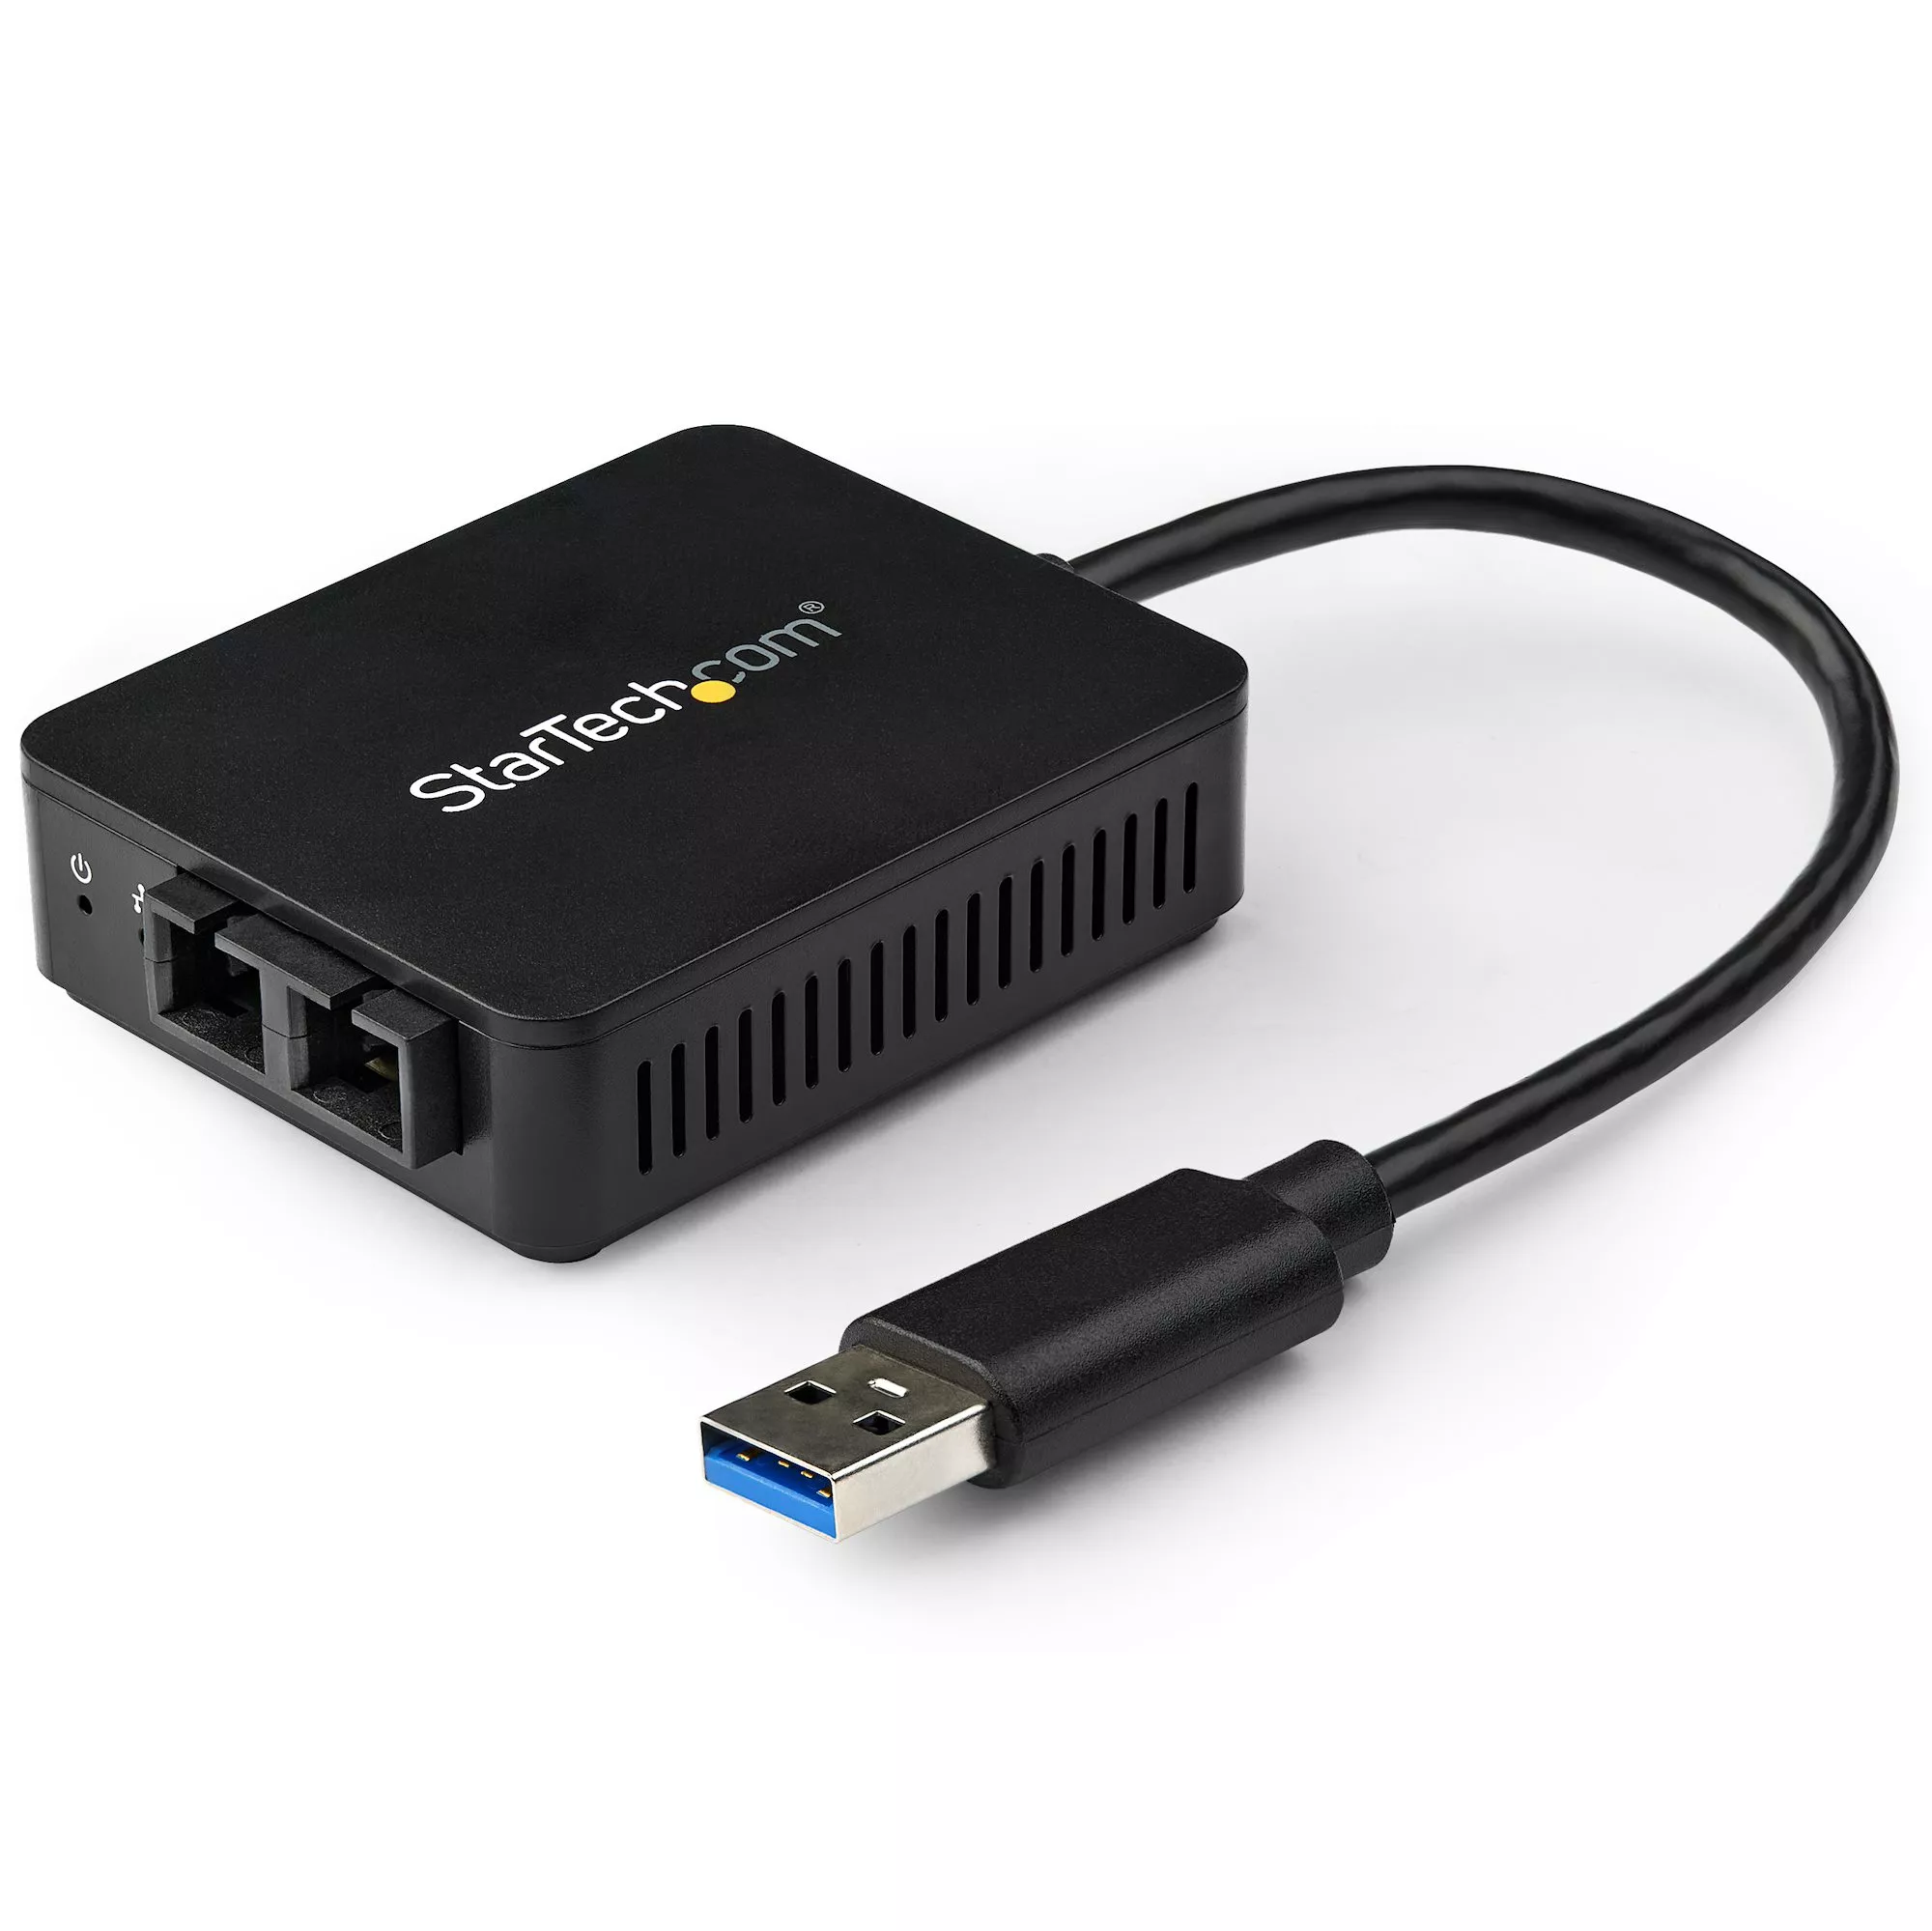 Revendeur officiel Switchs et Hubs StarTech.com Adaptateur réseau USB 3.0 vers fibre optique